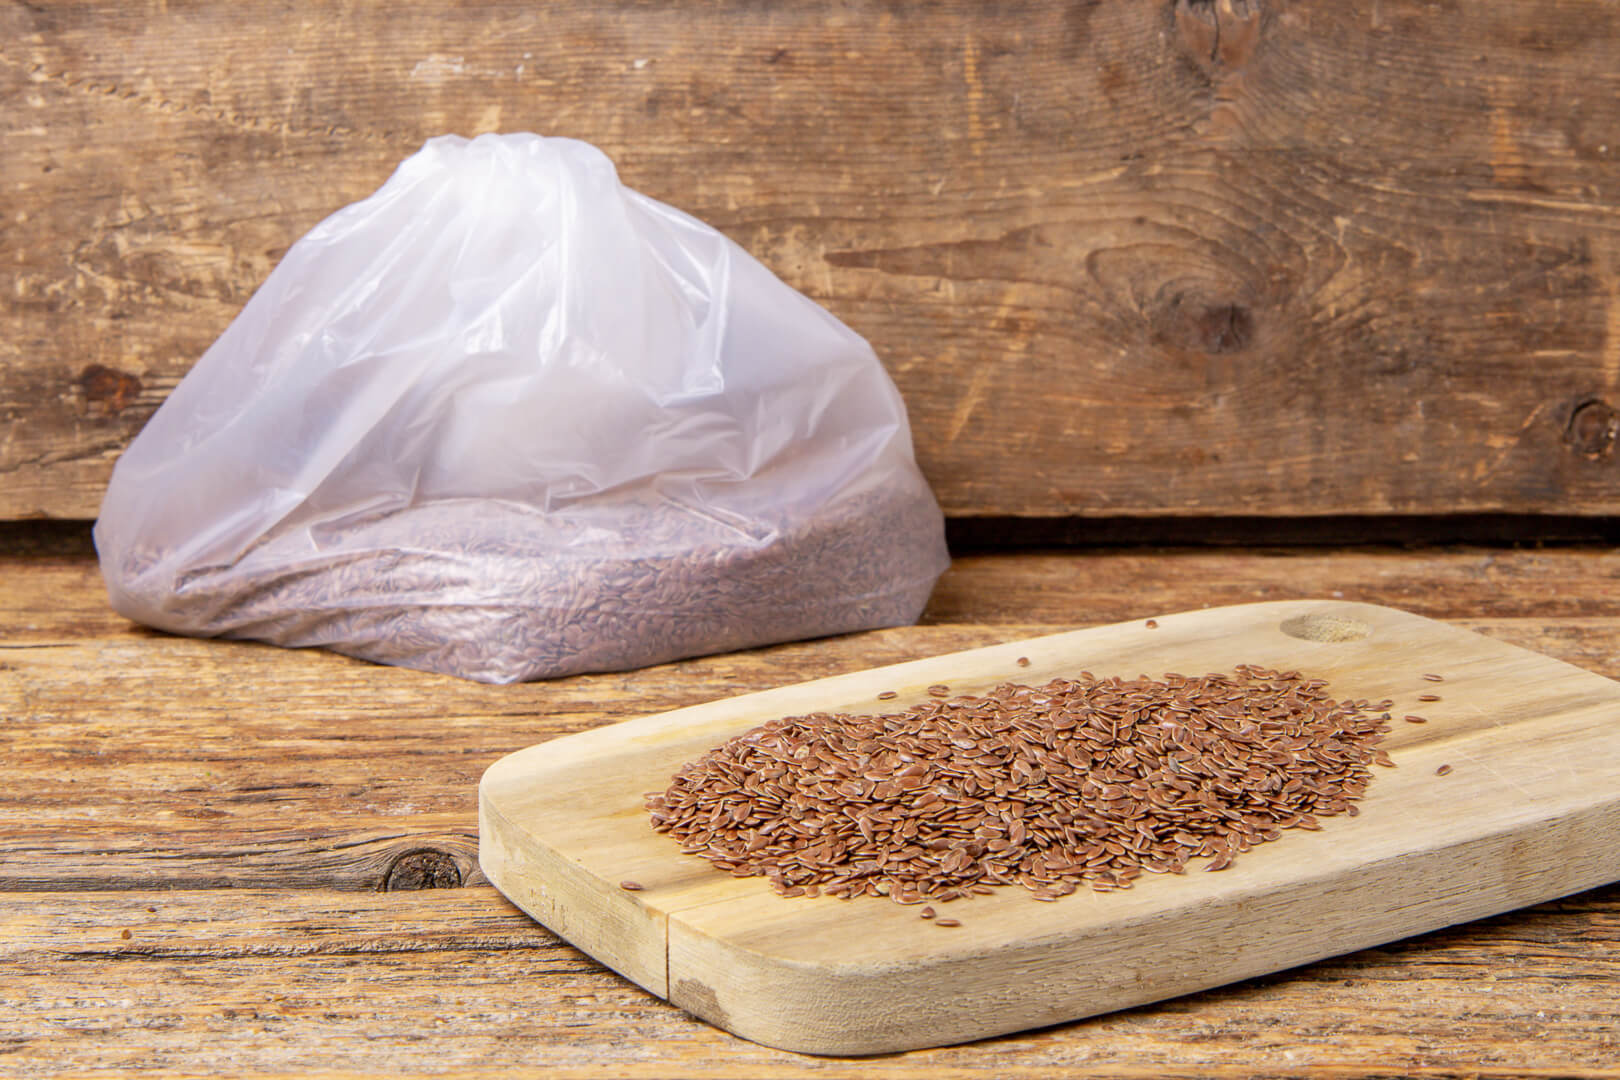 Graines de lin brun biologiques - La Milanaise